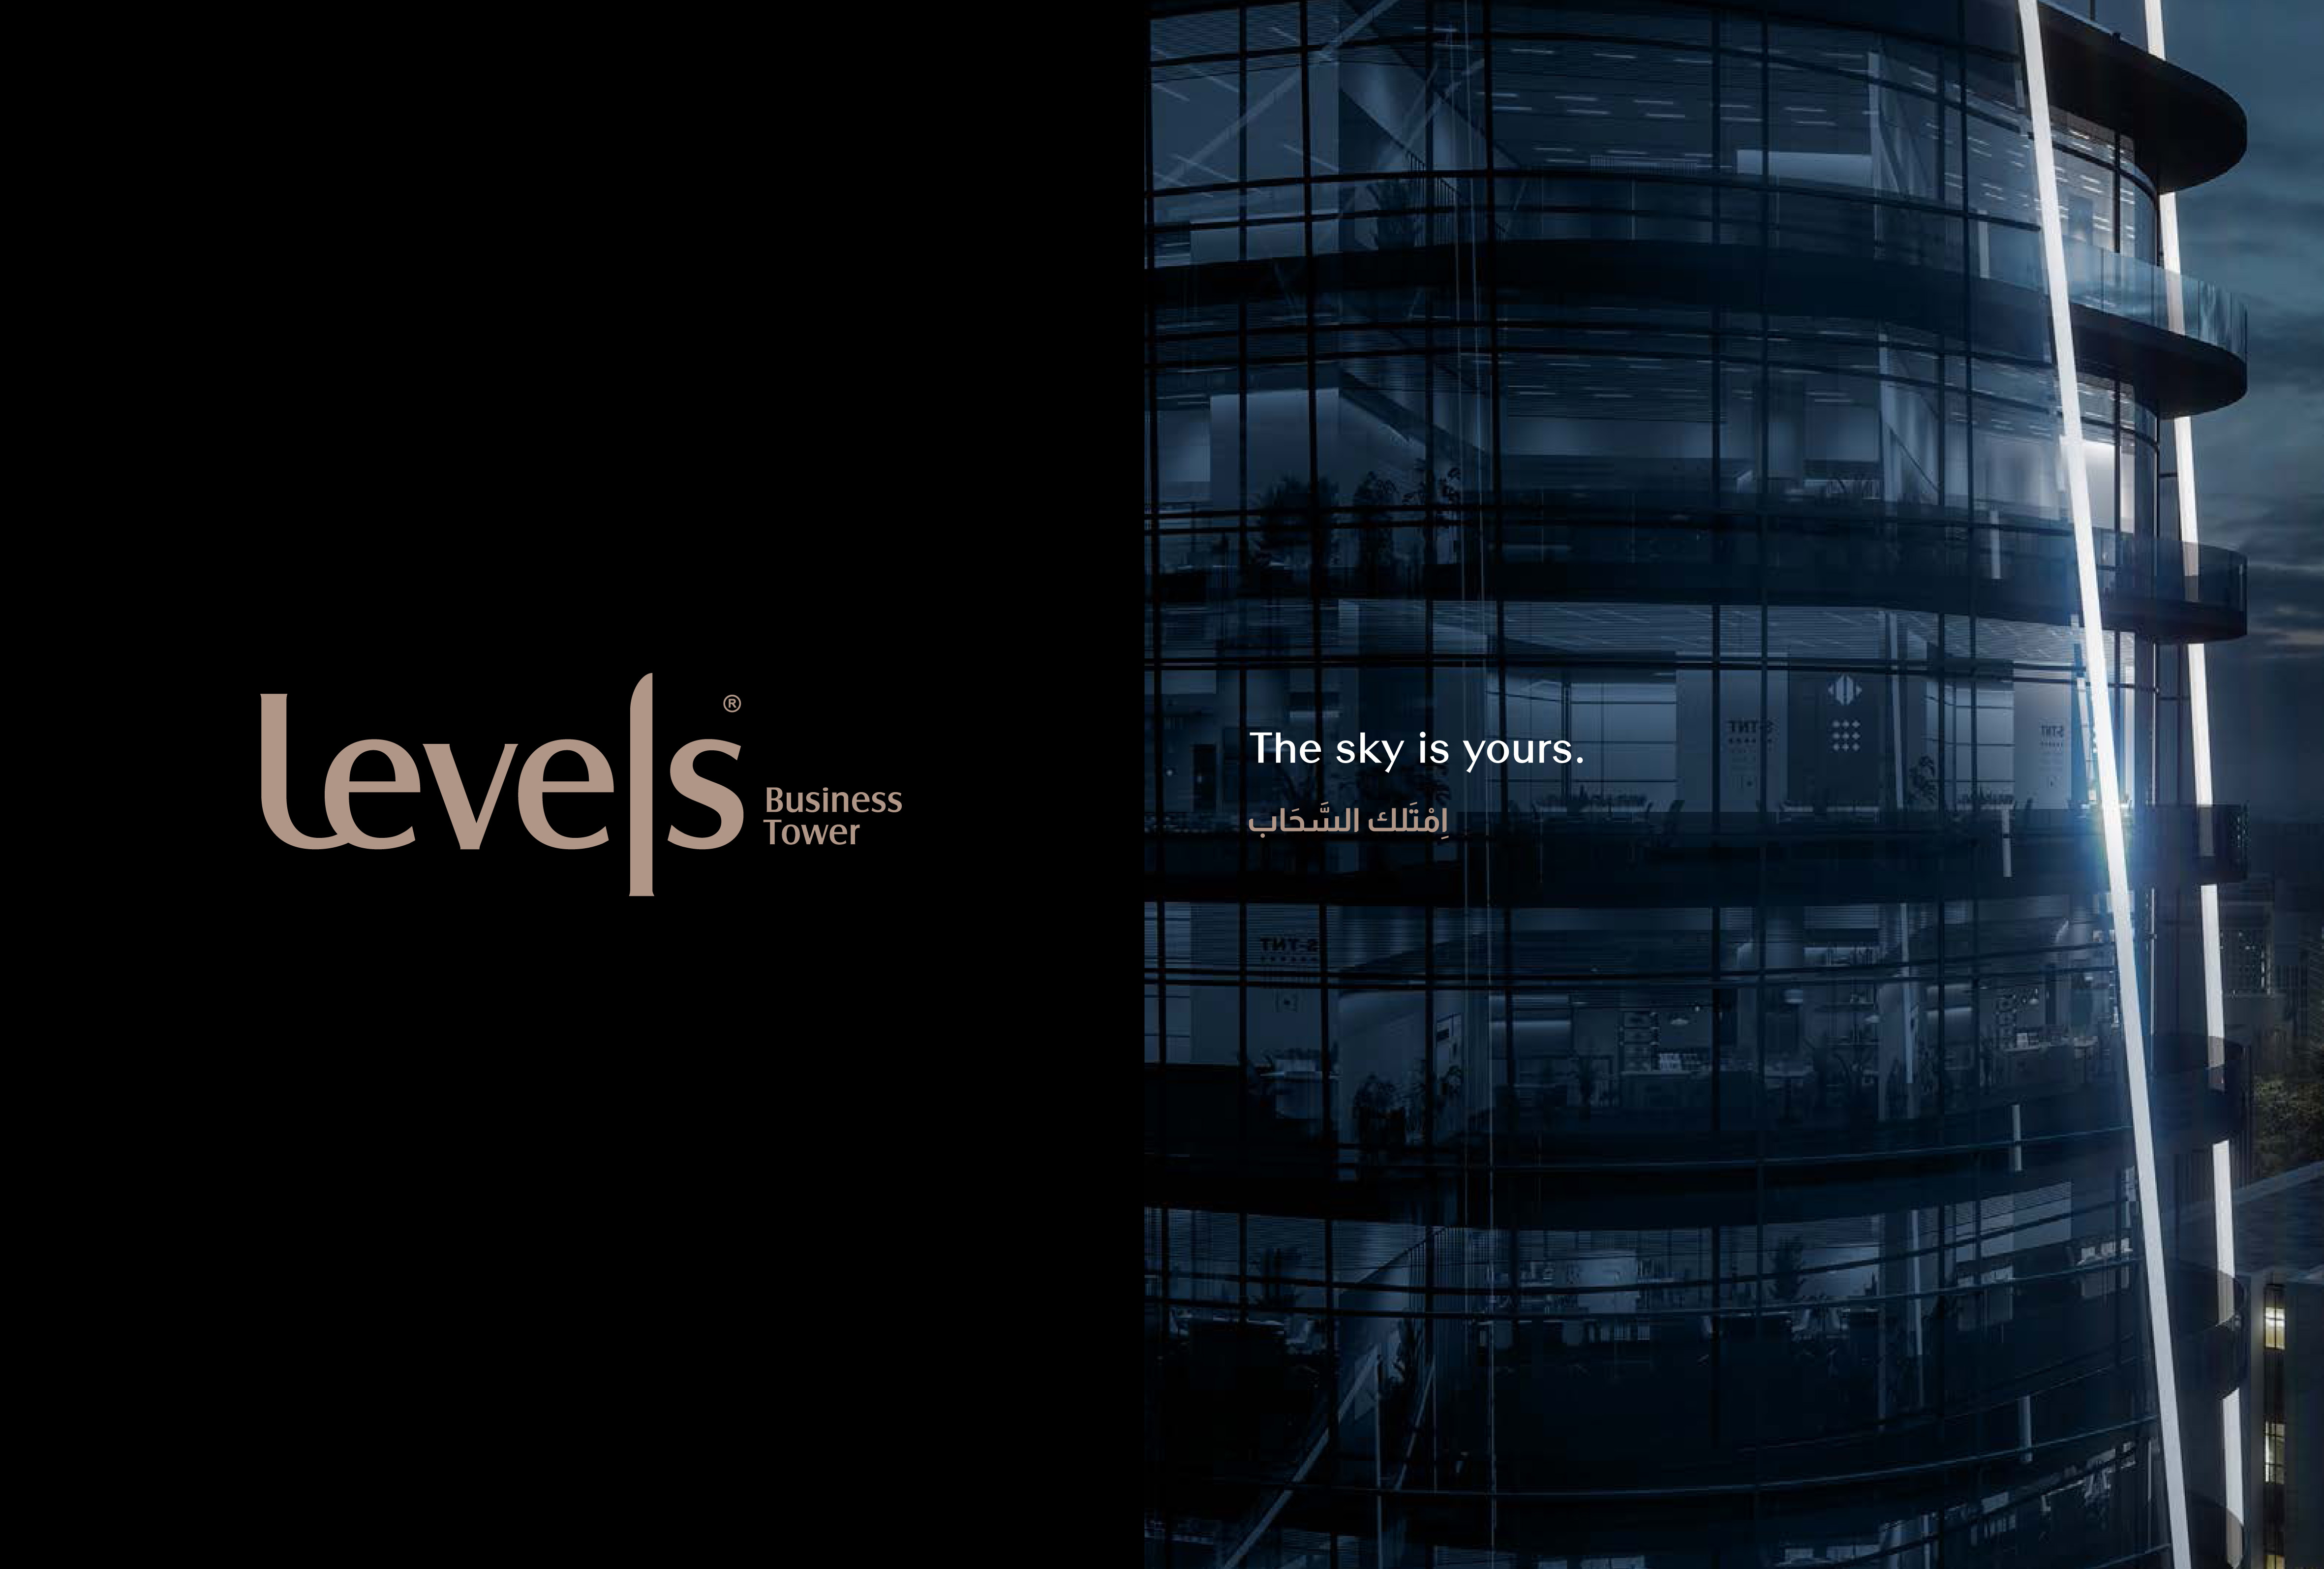  مول ليفلز بيزنس تاور العاصمة الإدارية الجديدة  Mall Levels Business Tower New Capital تجاري - اداري - فندقي